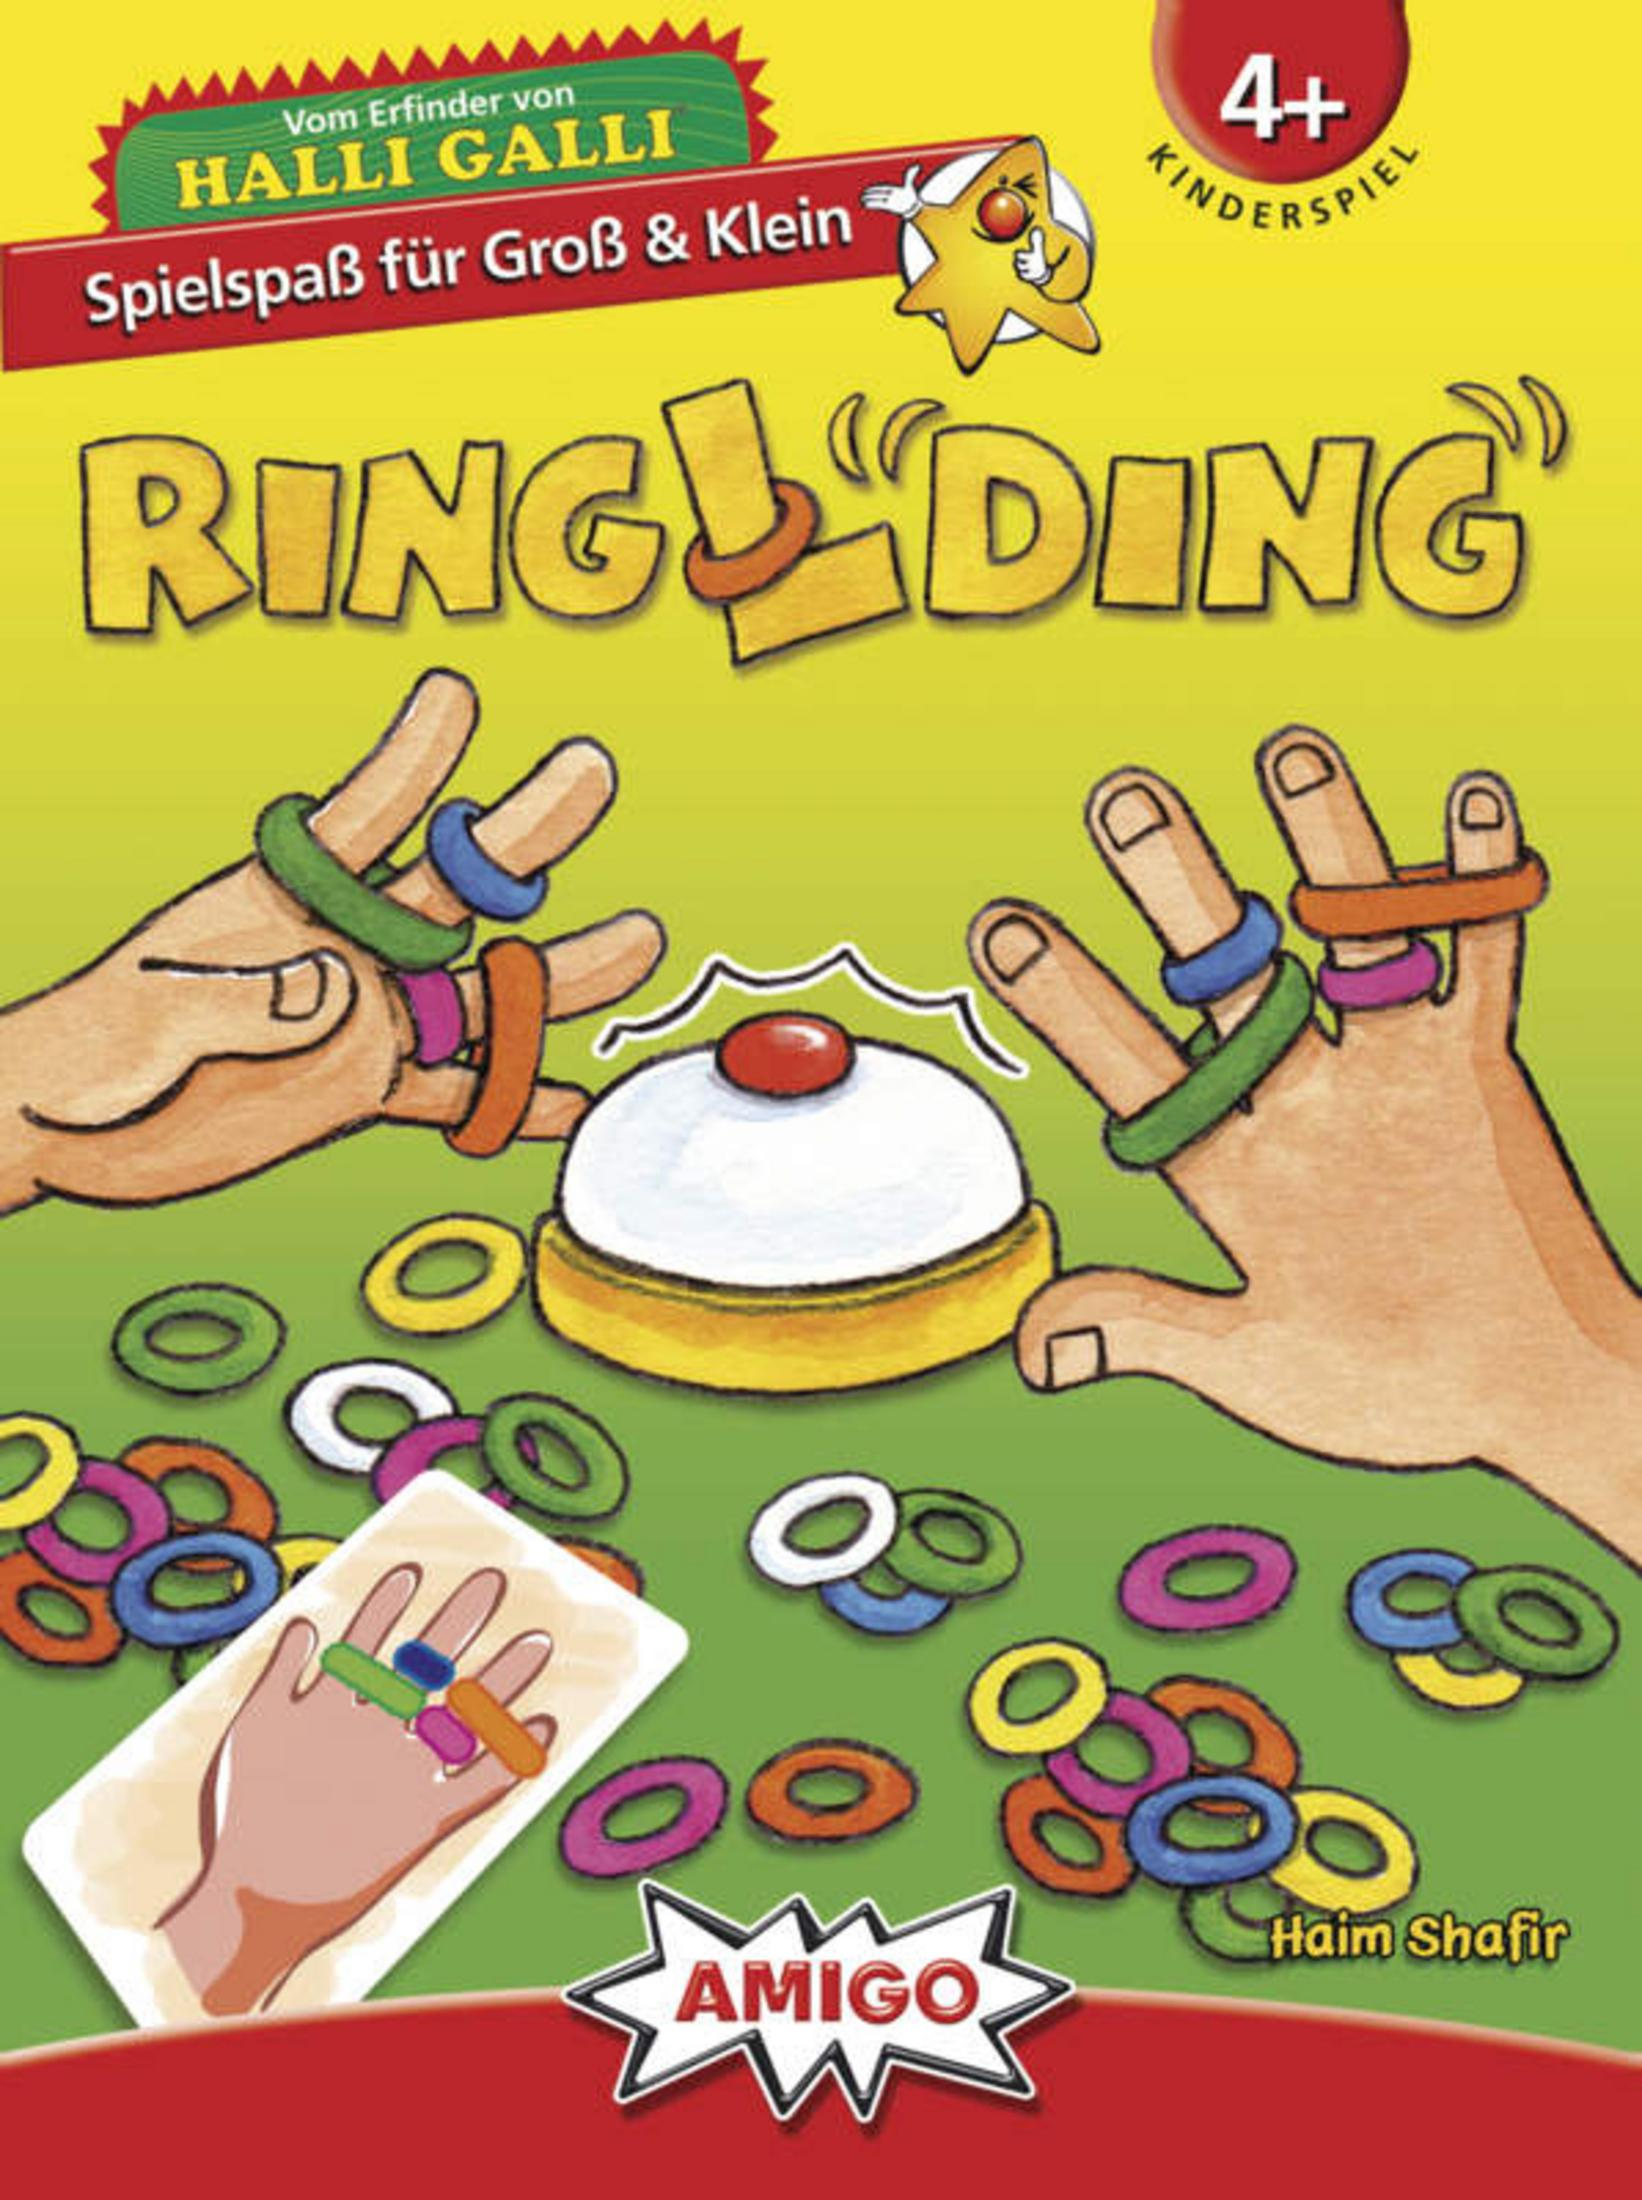 Kinderspiel RINGLDING AMIGO 01735